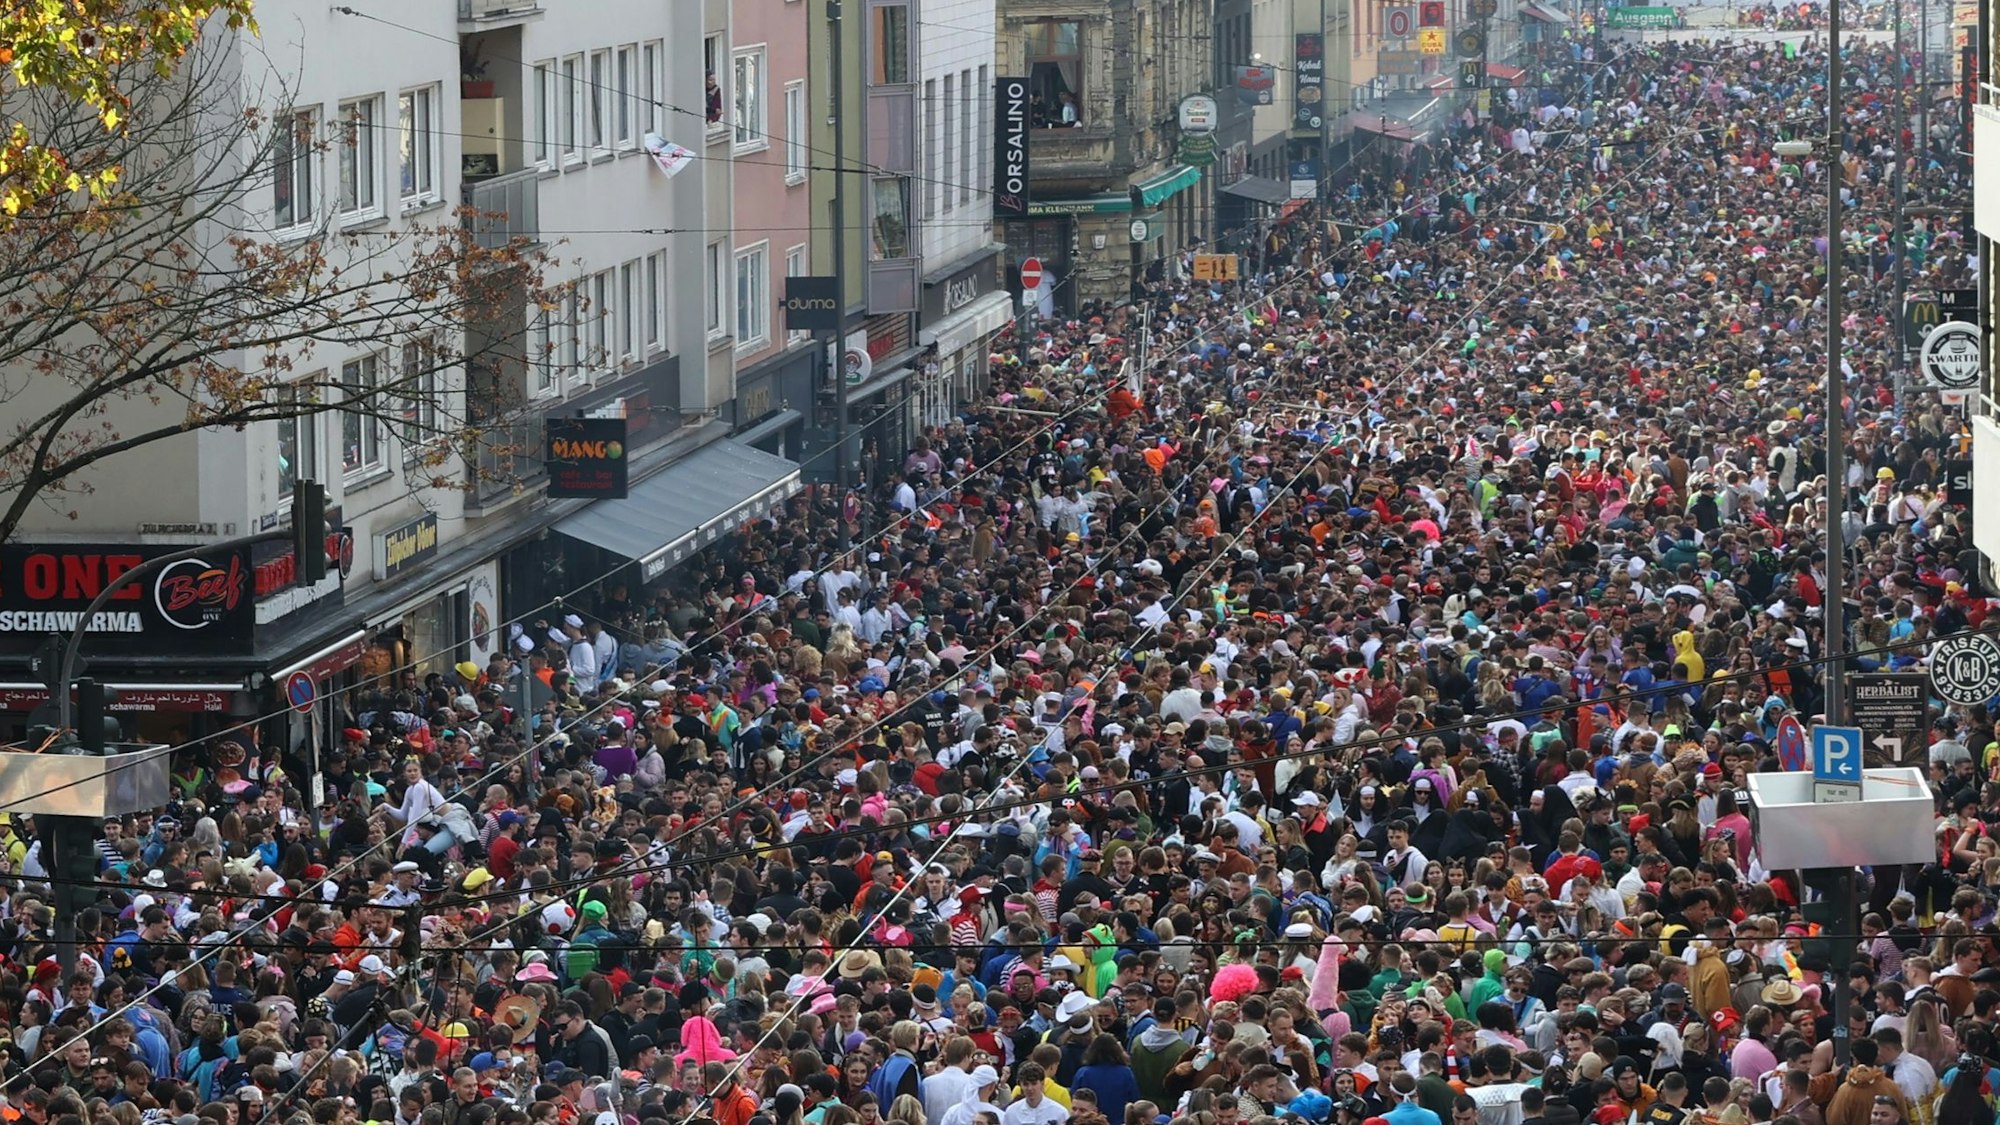 Blick aus einem Fenster auf die Zülpicher Straße, auf der sich Massen kostümierter Menschen drängen, die die gesamte Straßenbreite einnehmen.